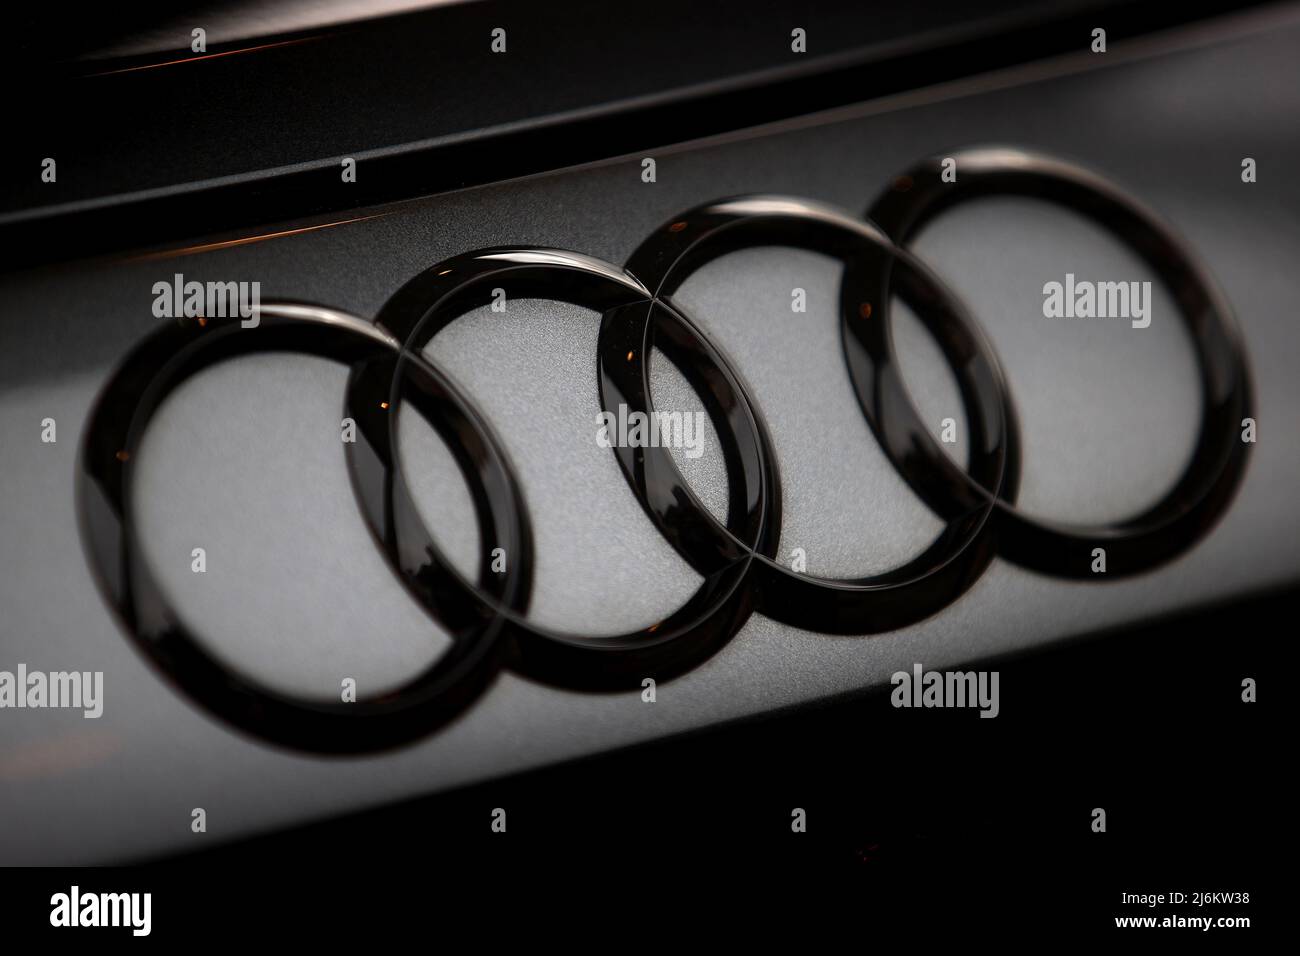 30 avril 2022, Cracovie, Pologne: Logo d'Audi vu sur une nouvelle voiture E-tron GT Audi. (Image de crédit : © Vito Corleone/SOPA Images via ZUMA Press Wire) Banque D'Images